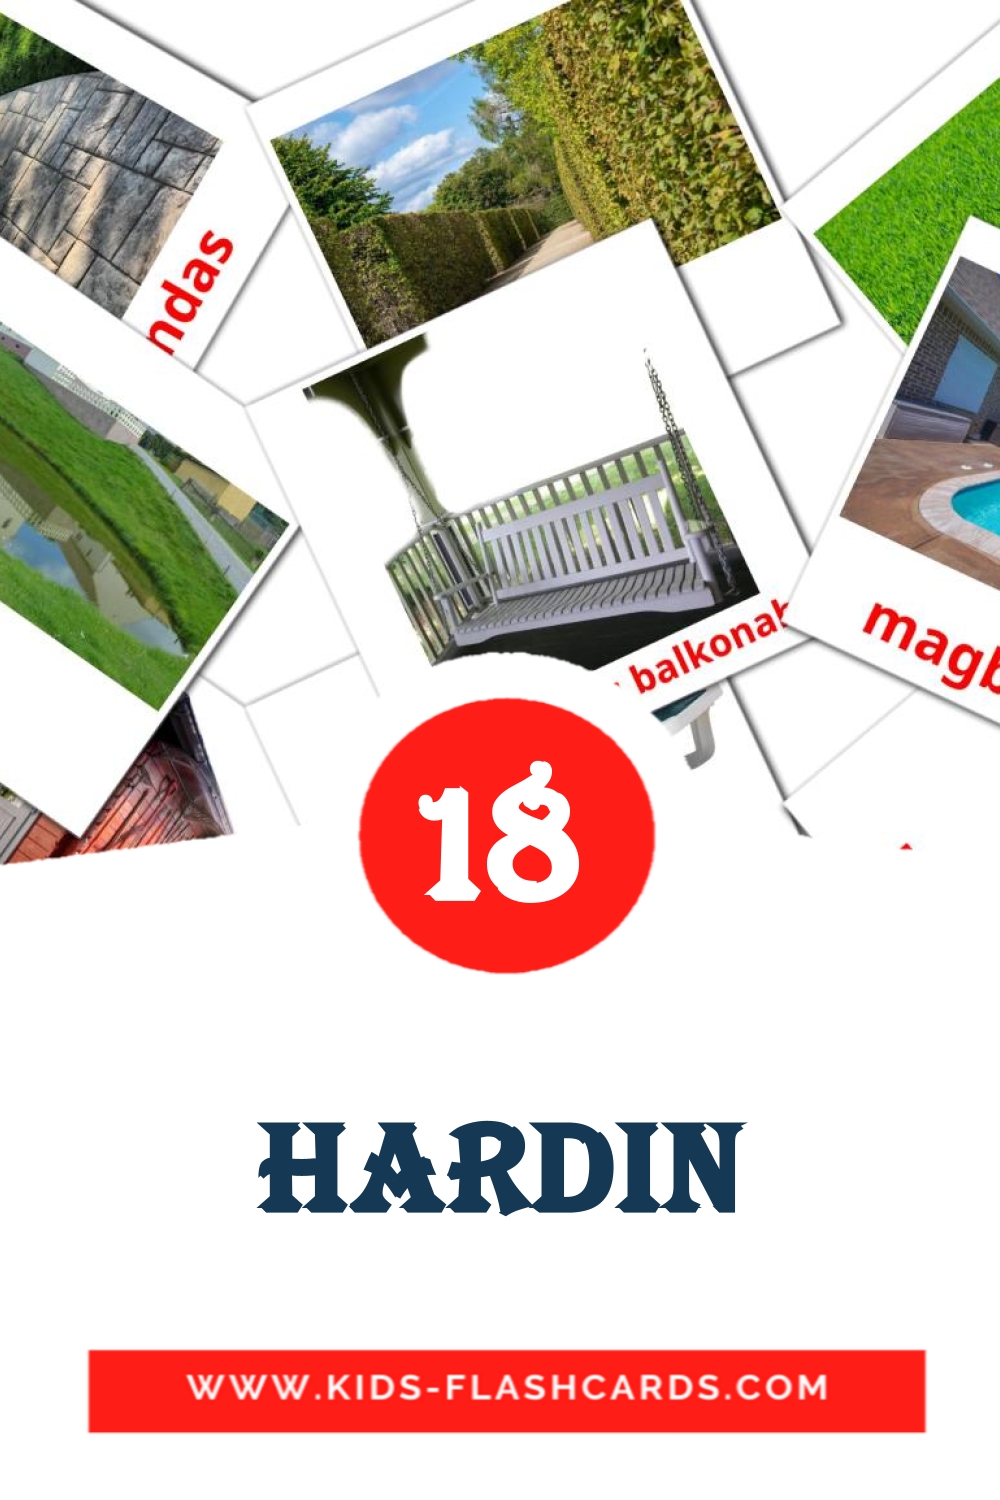 18 Hardin fotokaarten voor kleuters in het filipino